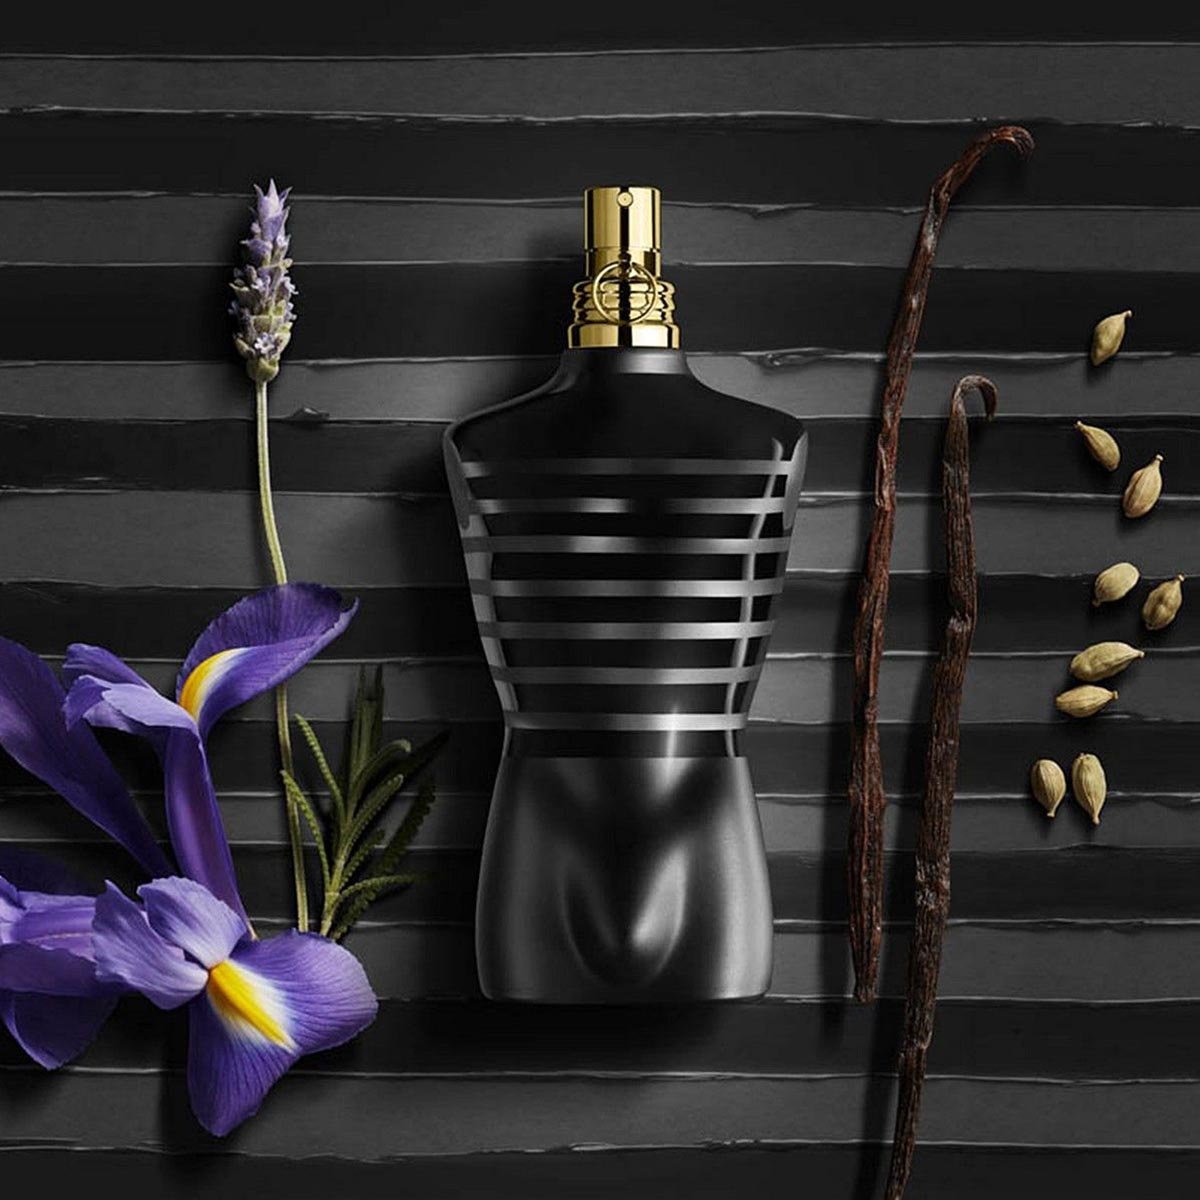 Jean Paul Gaultier "Le Male" Le Parfum Intense - My Perfume Shop Australia